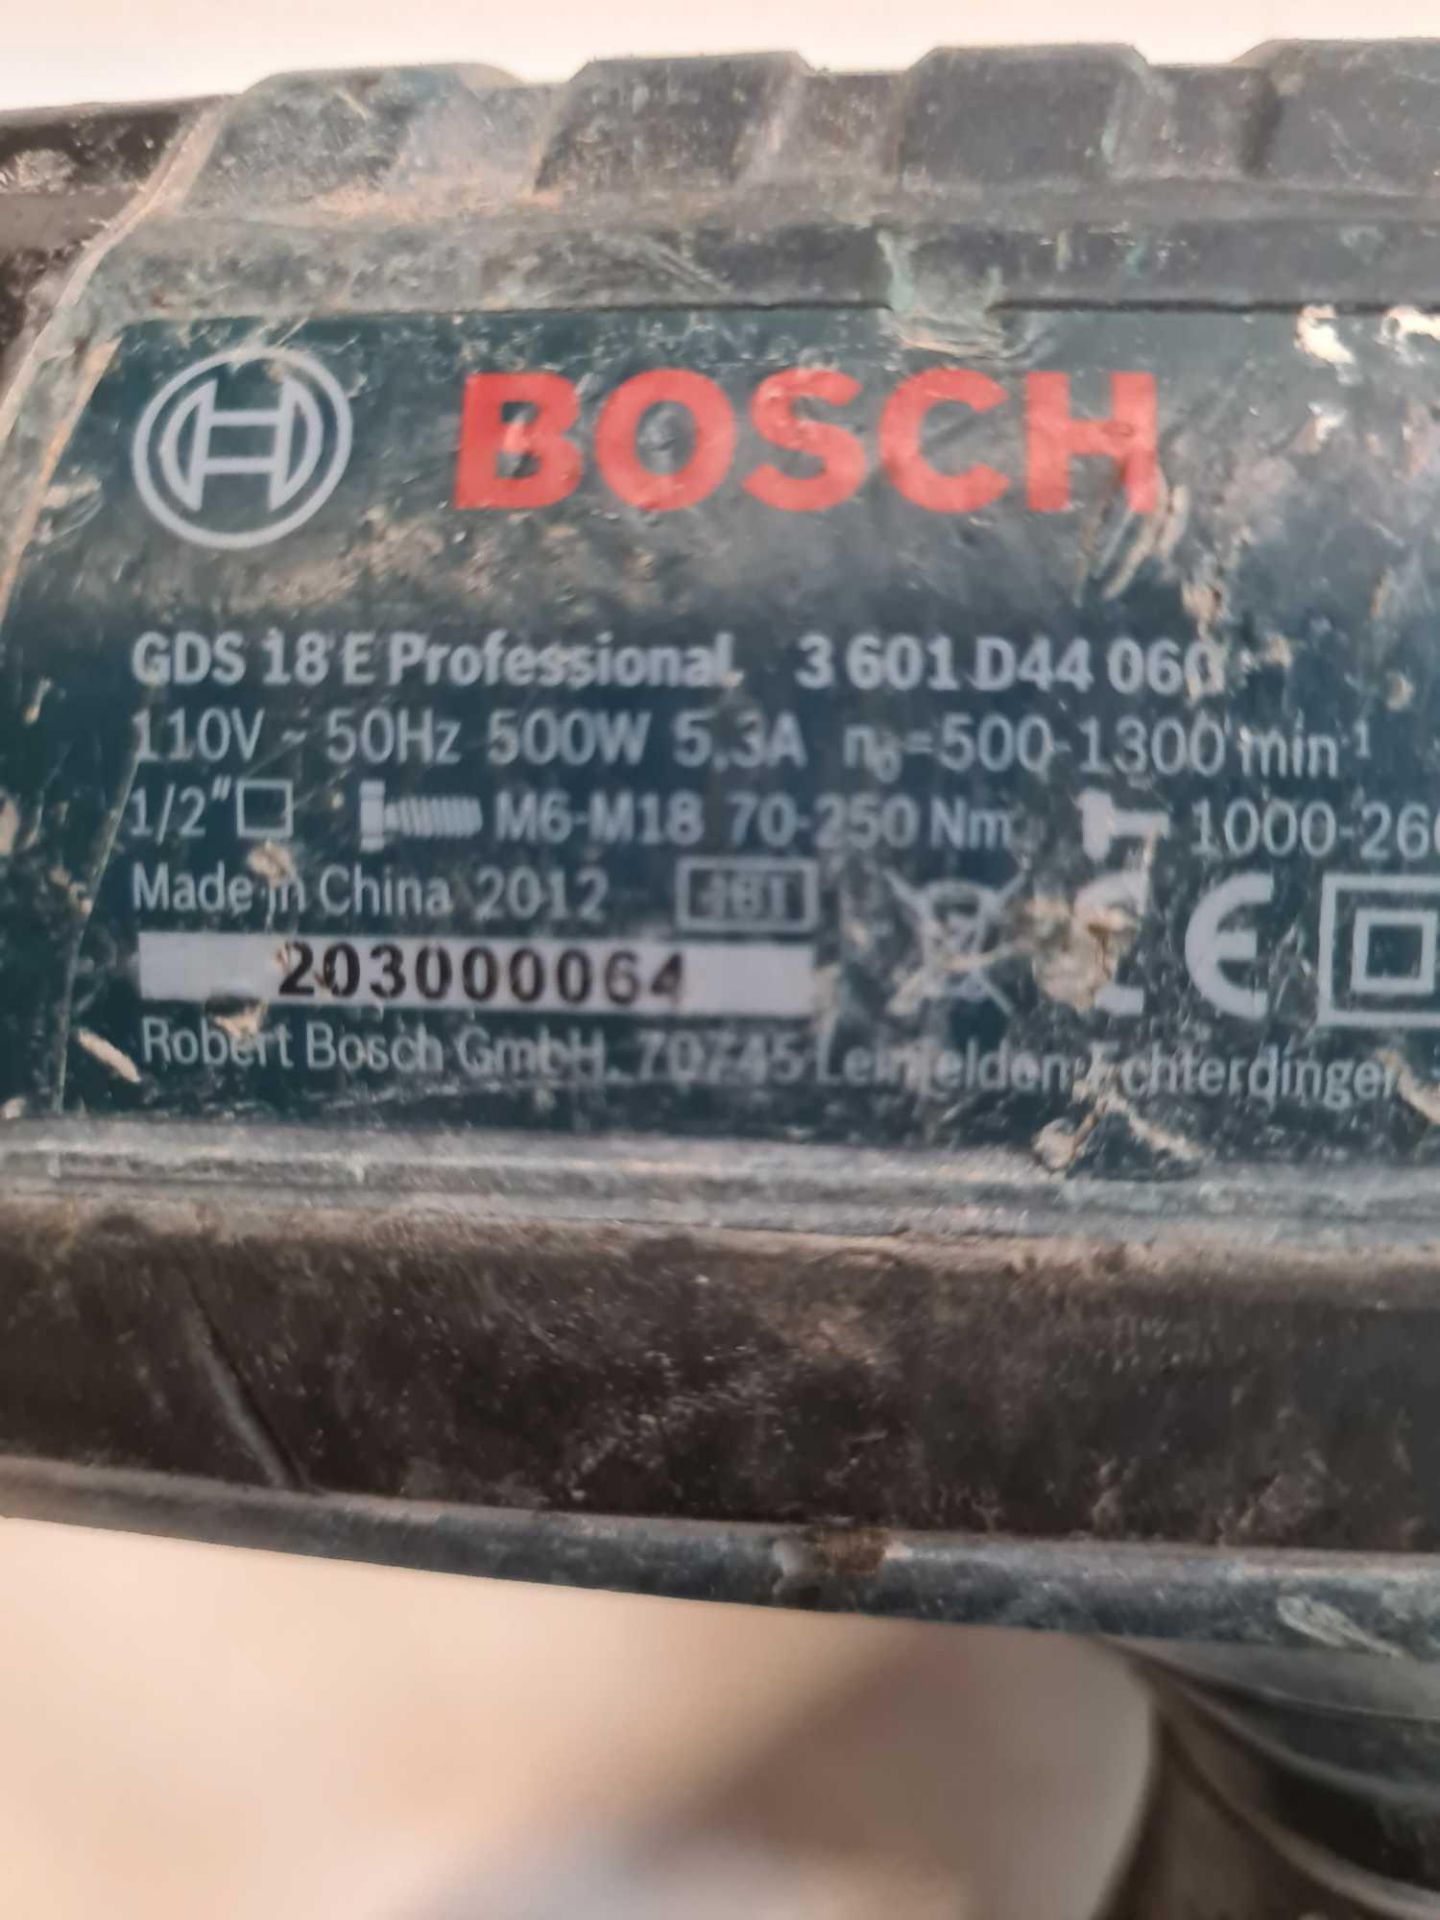 Bosch gds18 e nut gun 110volts - Image 3 of 3